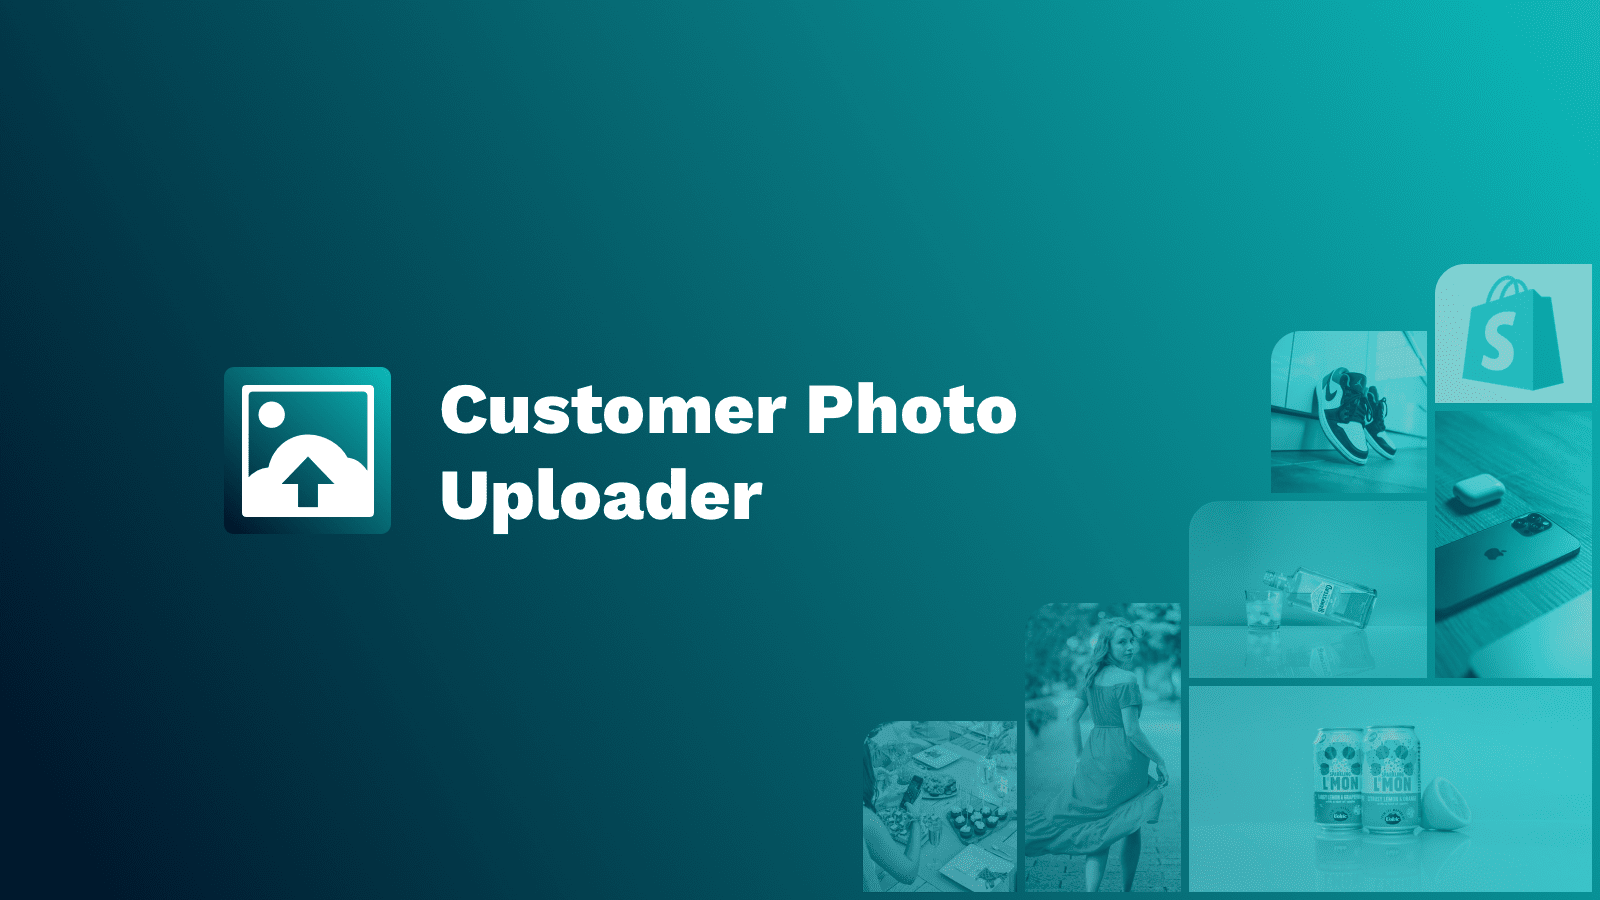 Aplicación de subida de fotos de clientes para imágenes creadas por clientes